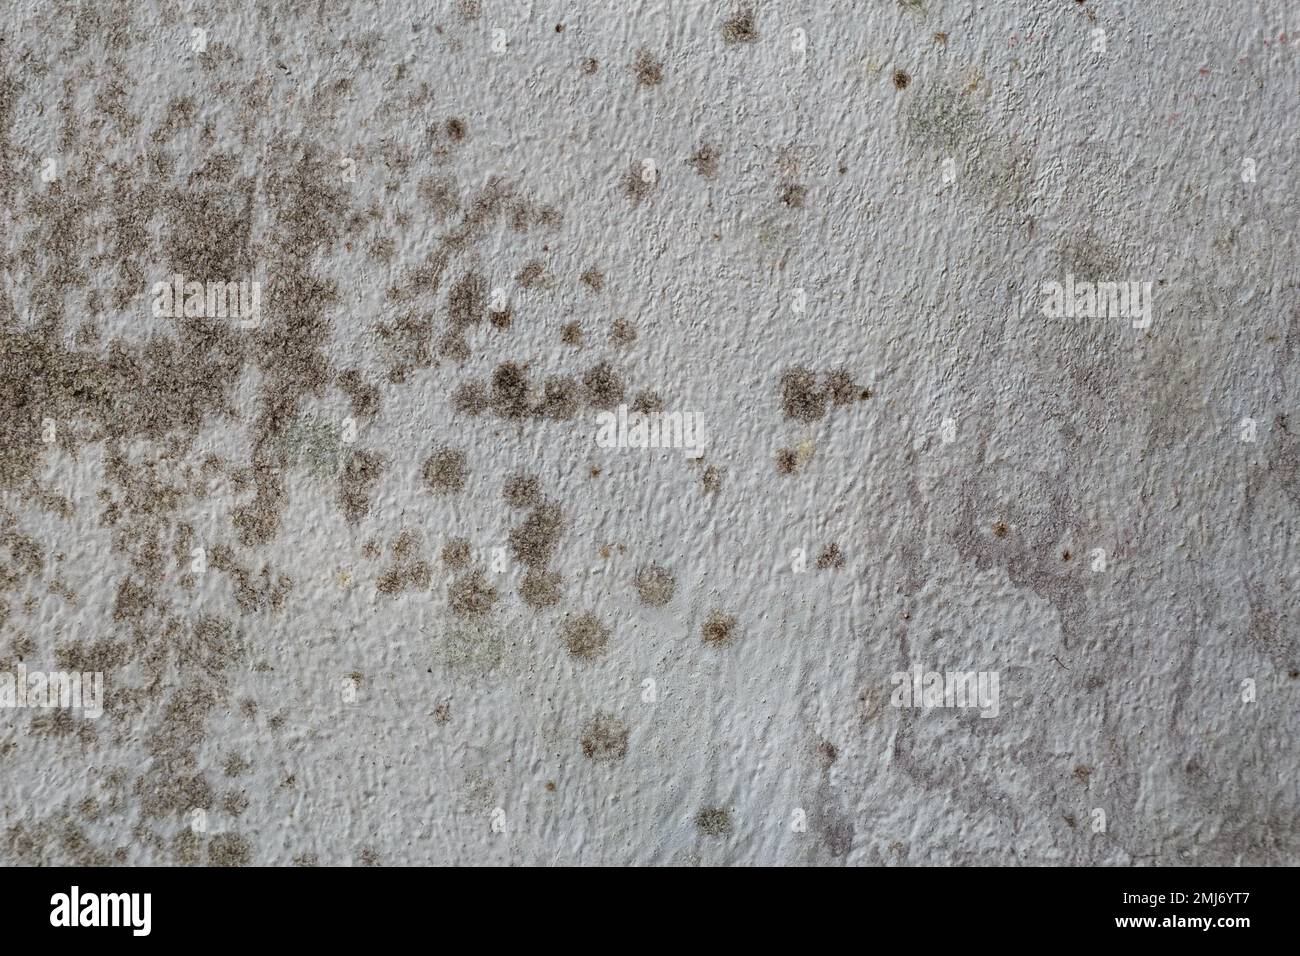 Manchas negras de moho tóxico y bacterias de hongos en la pared interior de la casa. Concepto de condensación, humedad y alta humedad Foto de stock